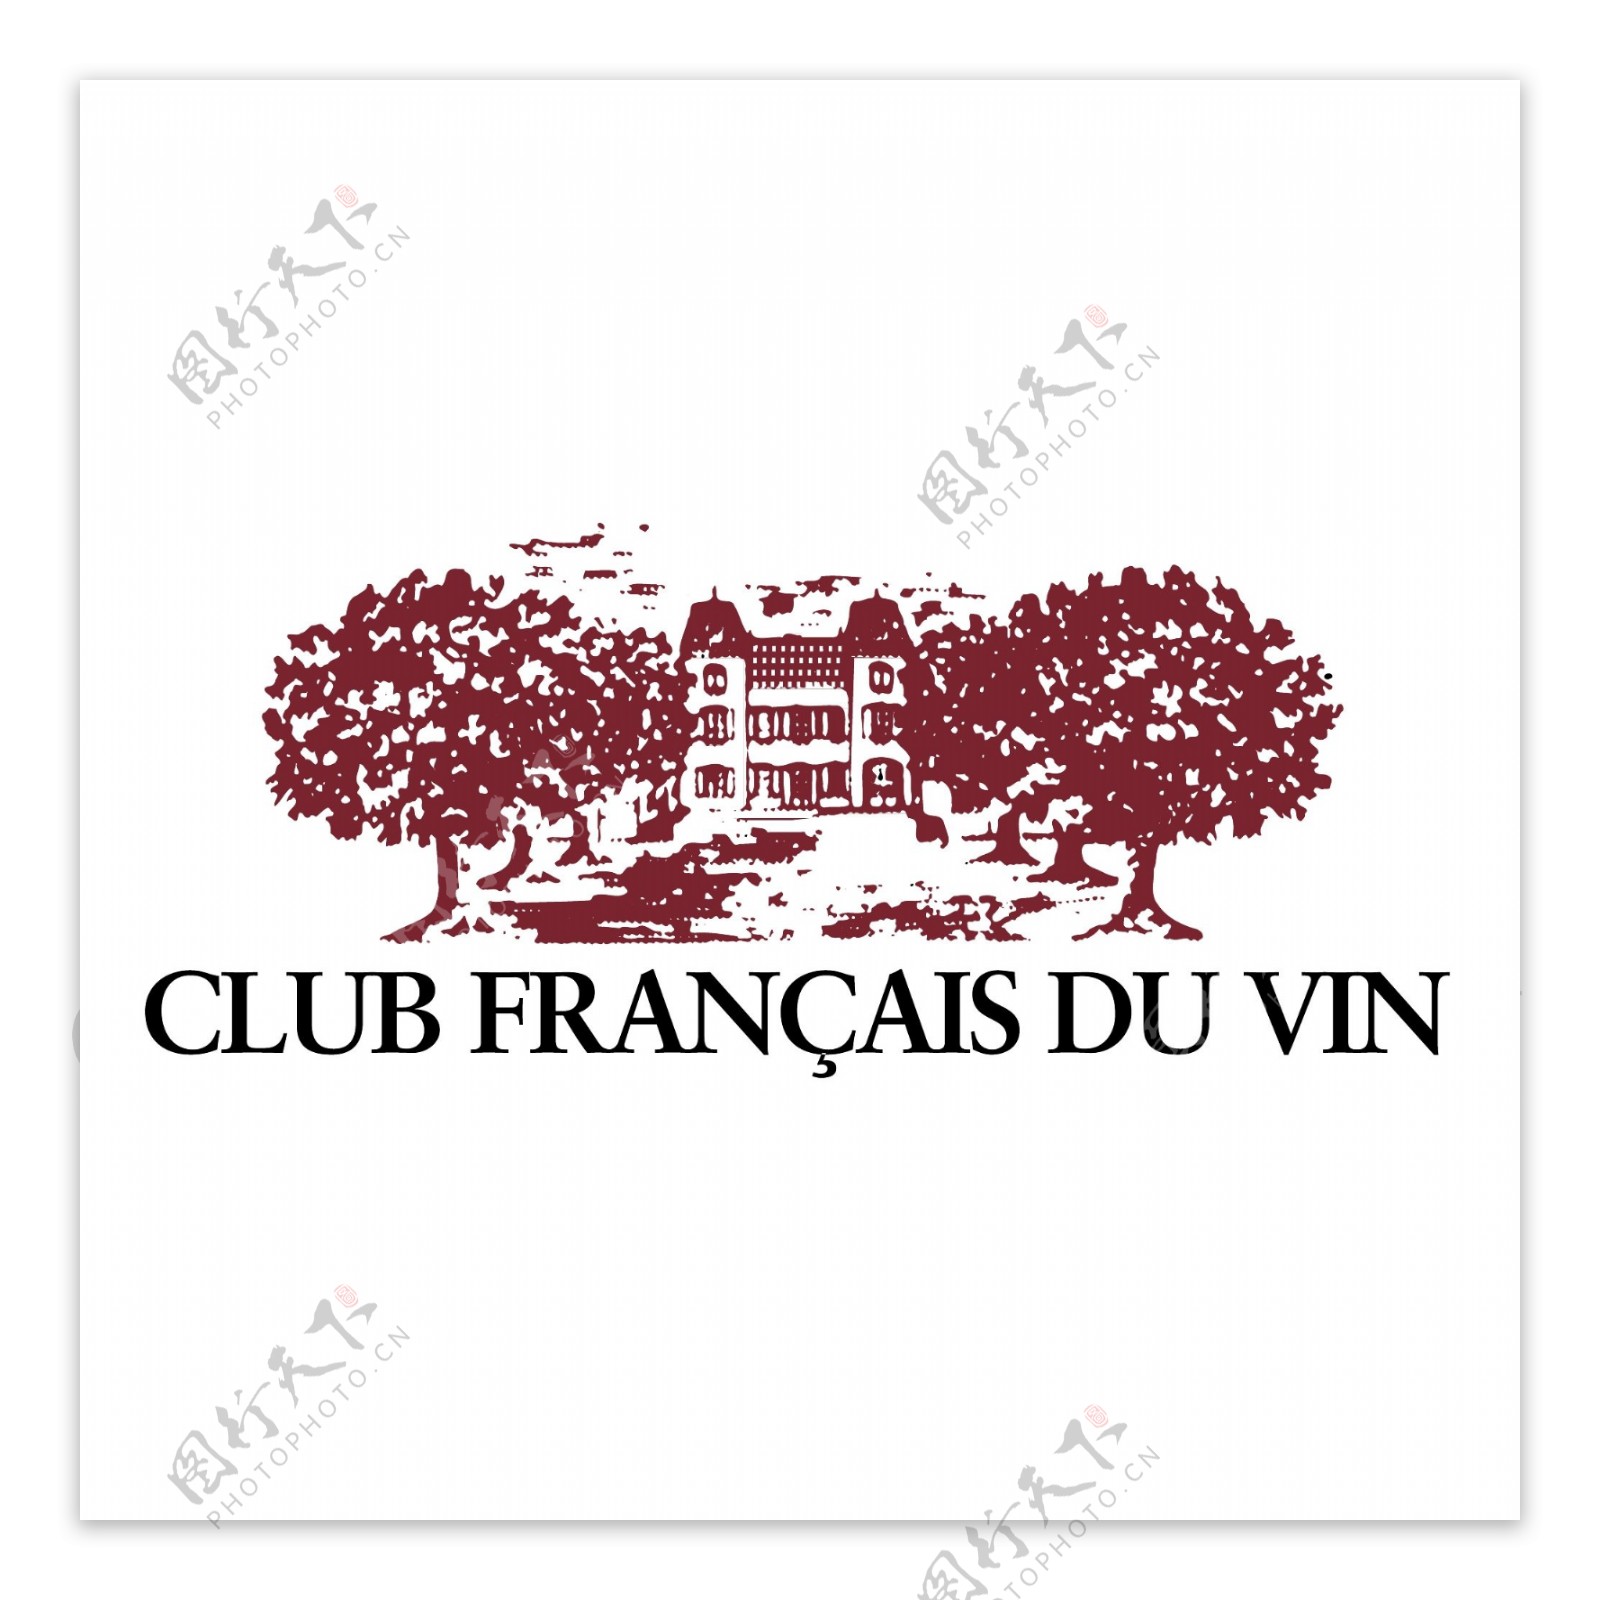 法国葡萄酒俱乐部